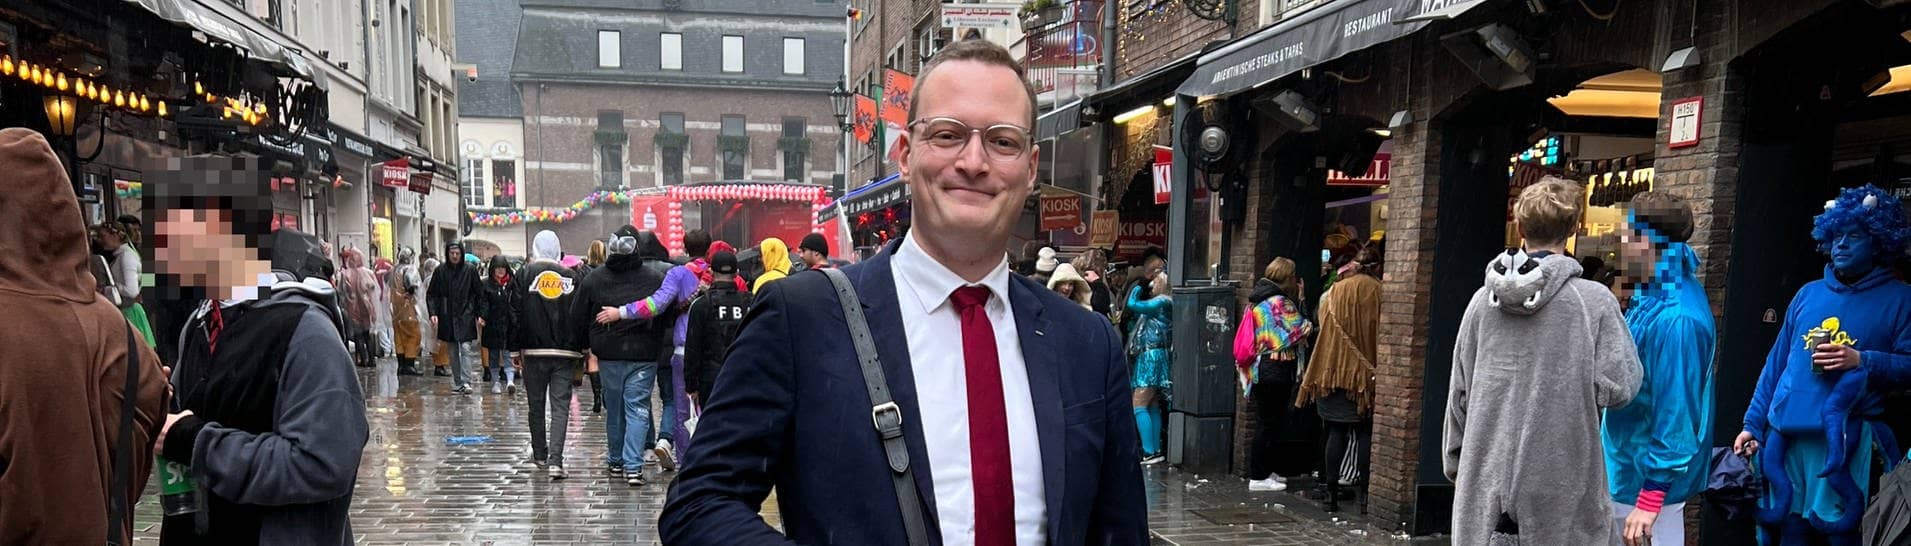 Mirco Budde als Doppelgänger von Politiker Jens Spahn beim Düsseldorfer Karneval